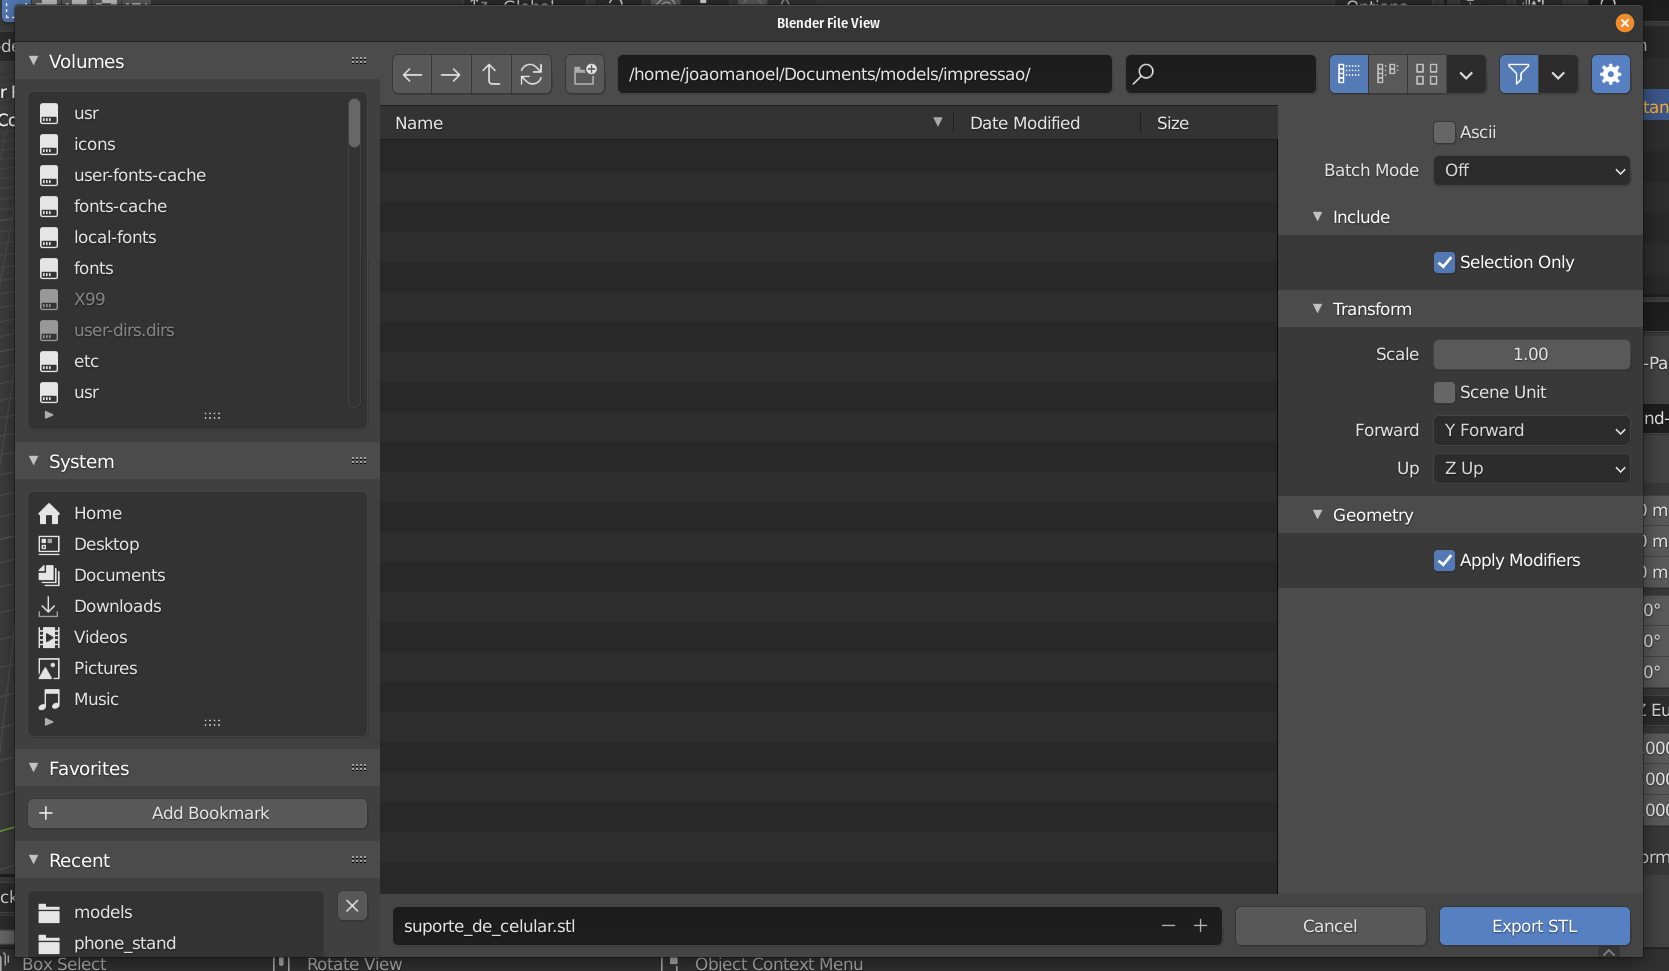 O programa Blender com um menu de exportar um modelo aberto. O arquivo “suporte_de_celular.stl” está prestes a ser salvo no caminho “home/joaomanoel/Documents/models/impressao/”